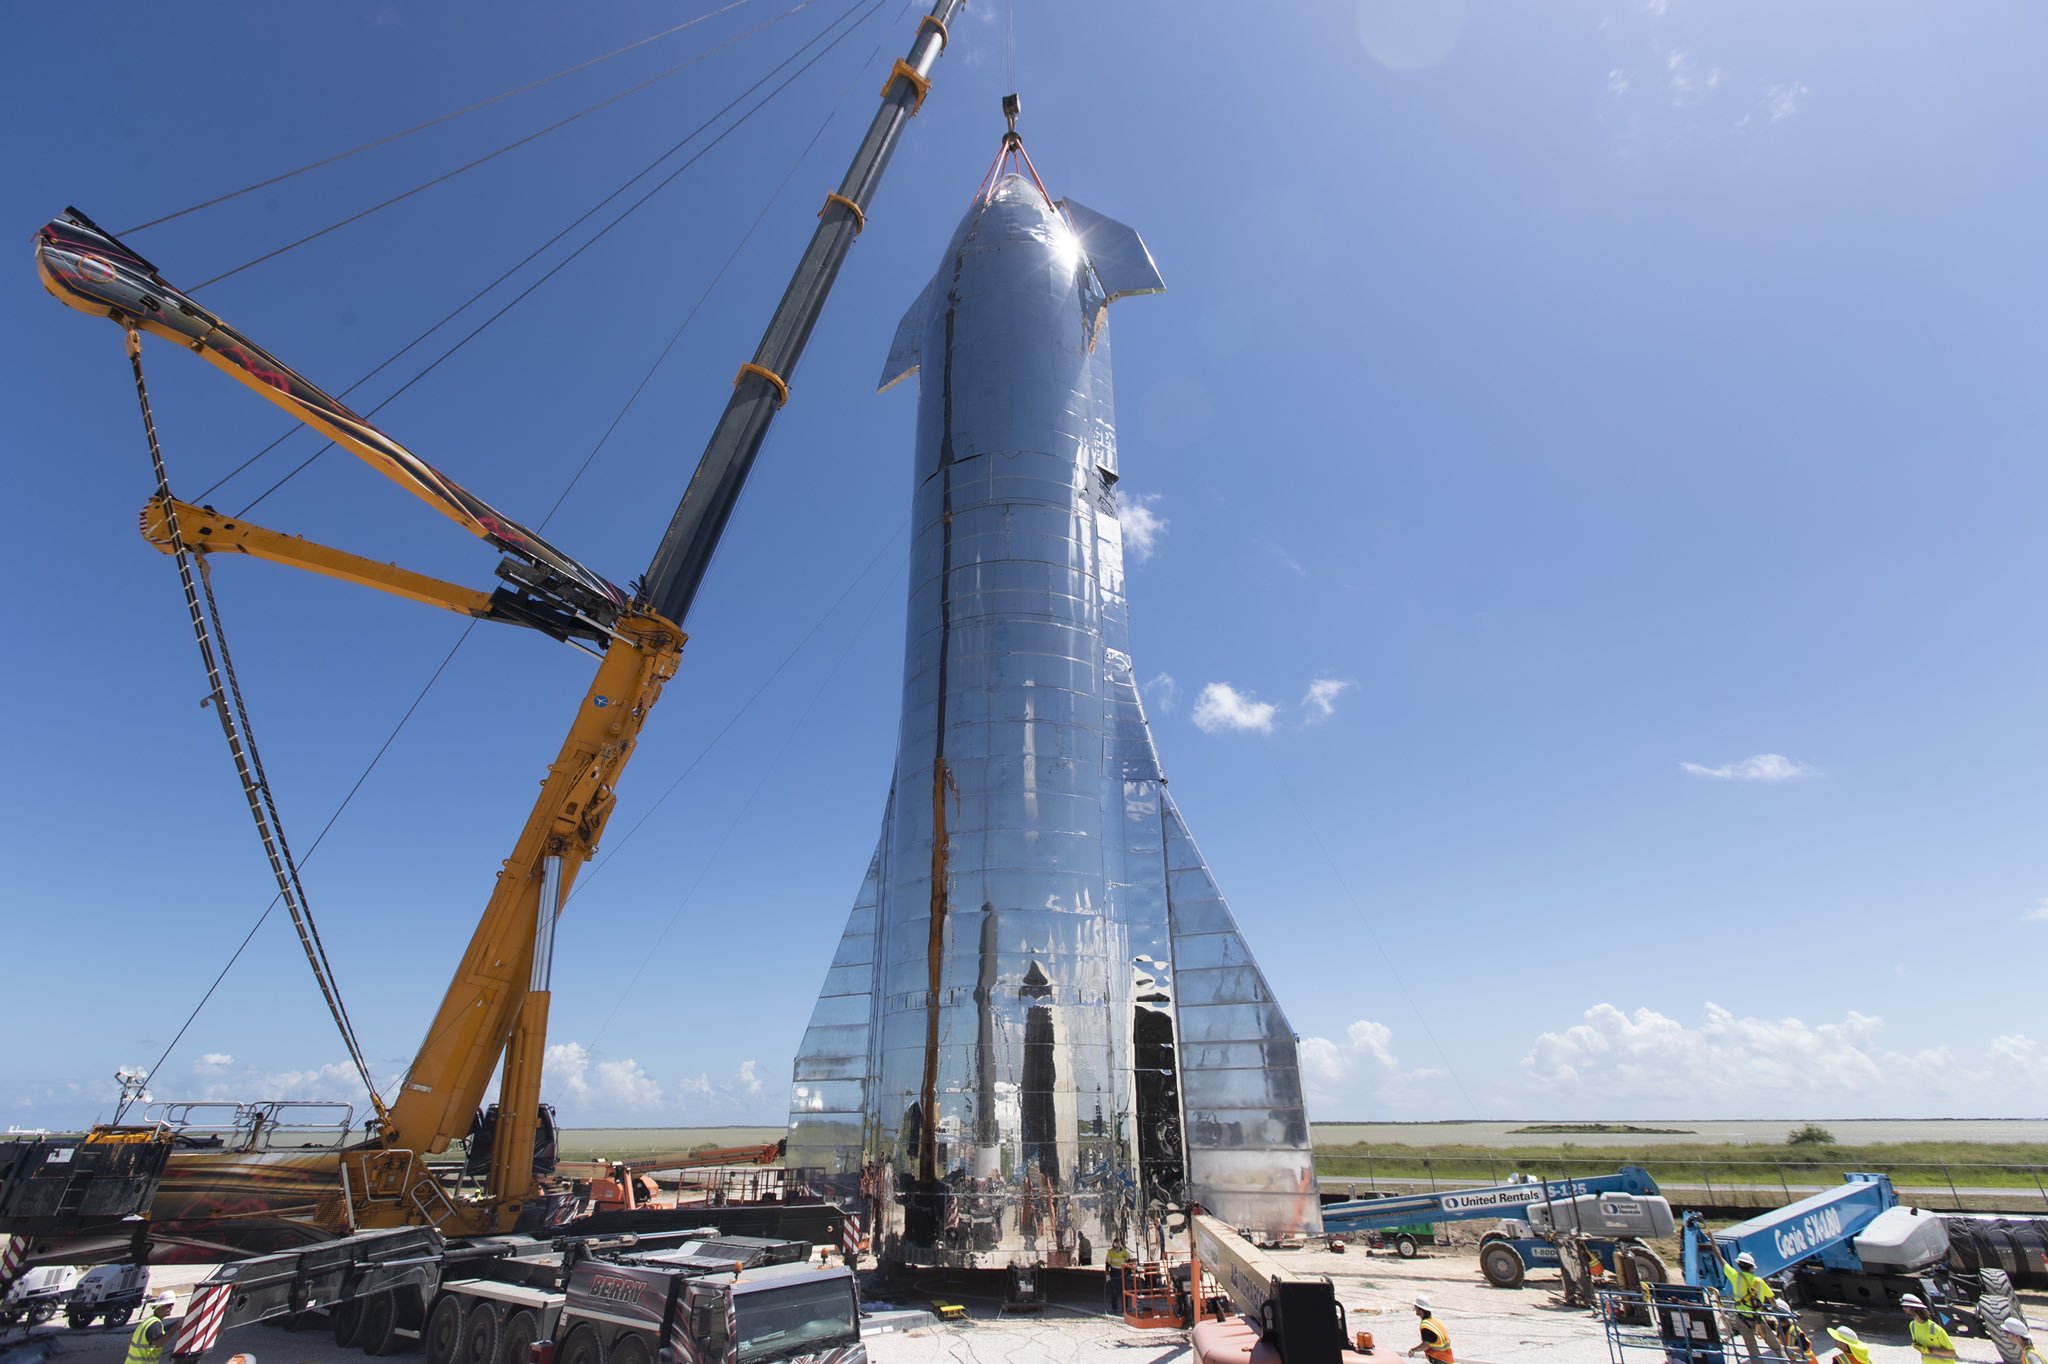 【SpaceX「星艦」火箭着陸爆炸 馬斯克表示「成功了一半」】 | 高登新聞